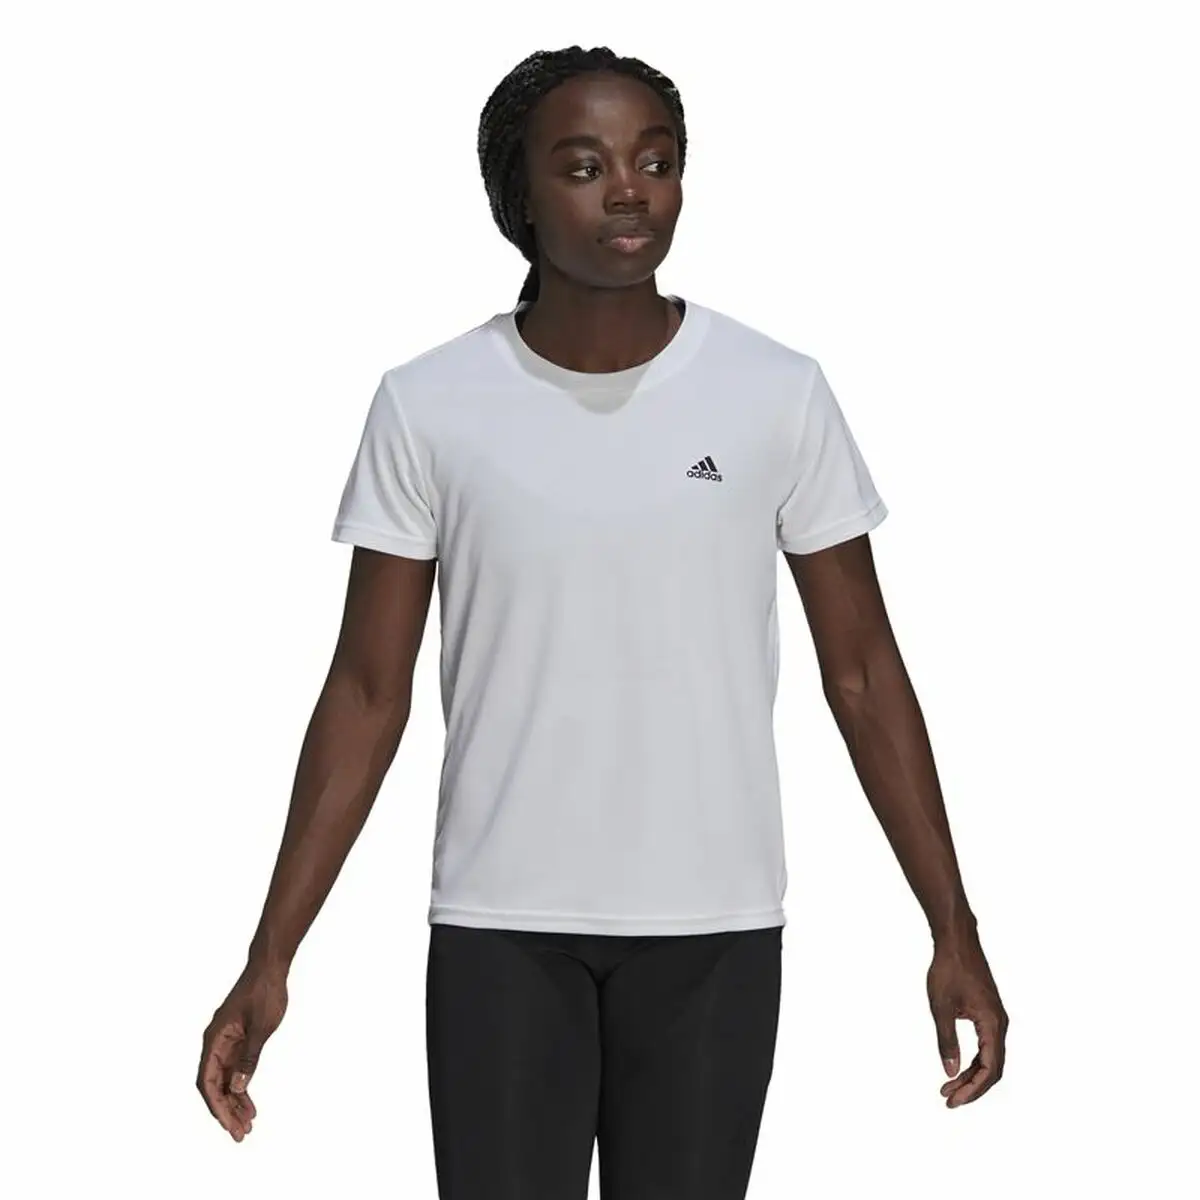 T shirt a manches courtes femme adidas aeroready d2m sport blanc_8711. Bienvenue chez DIAYTAR SENEGAL - Où le Shopping Devient une Aventure. Découvrez notre collection diversifiée et explorez des produits qui reflètent la diversité du Sénégal.